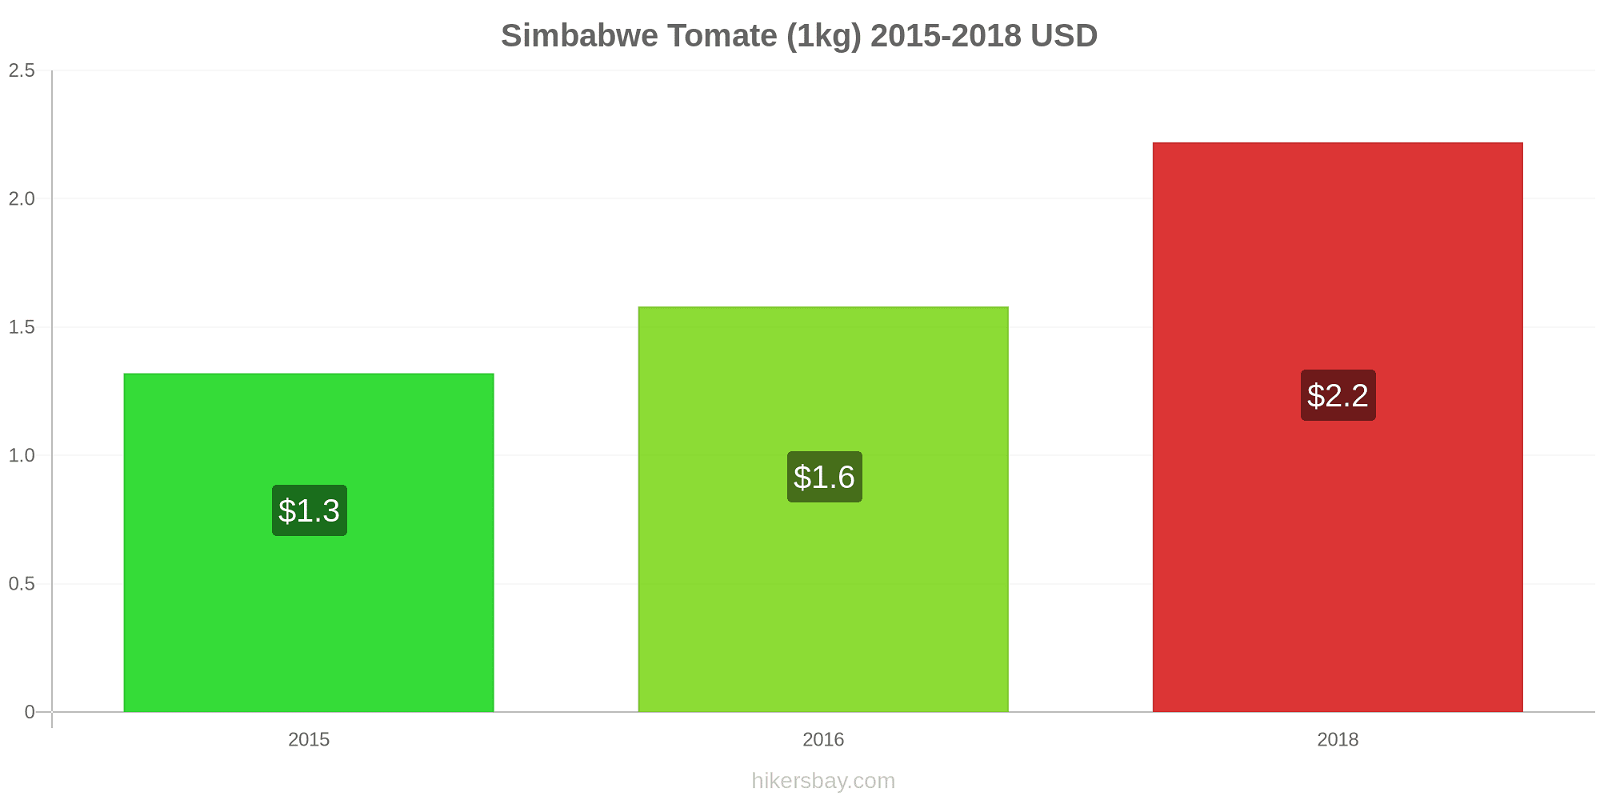 Simbabwe Preisänderungen Tomaten (1kg) hikersbay.com